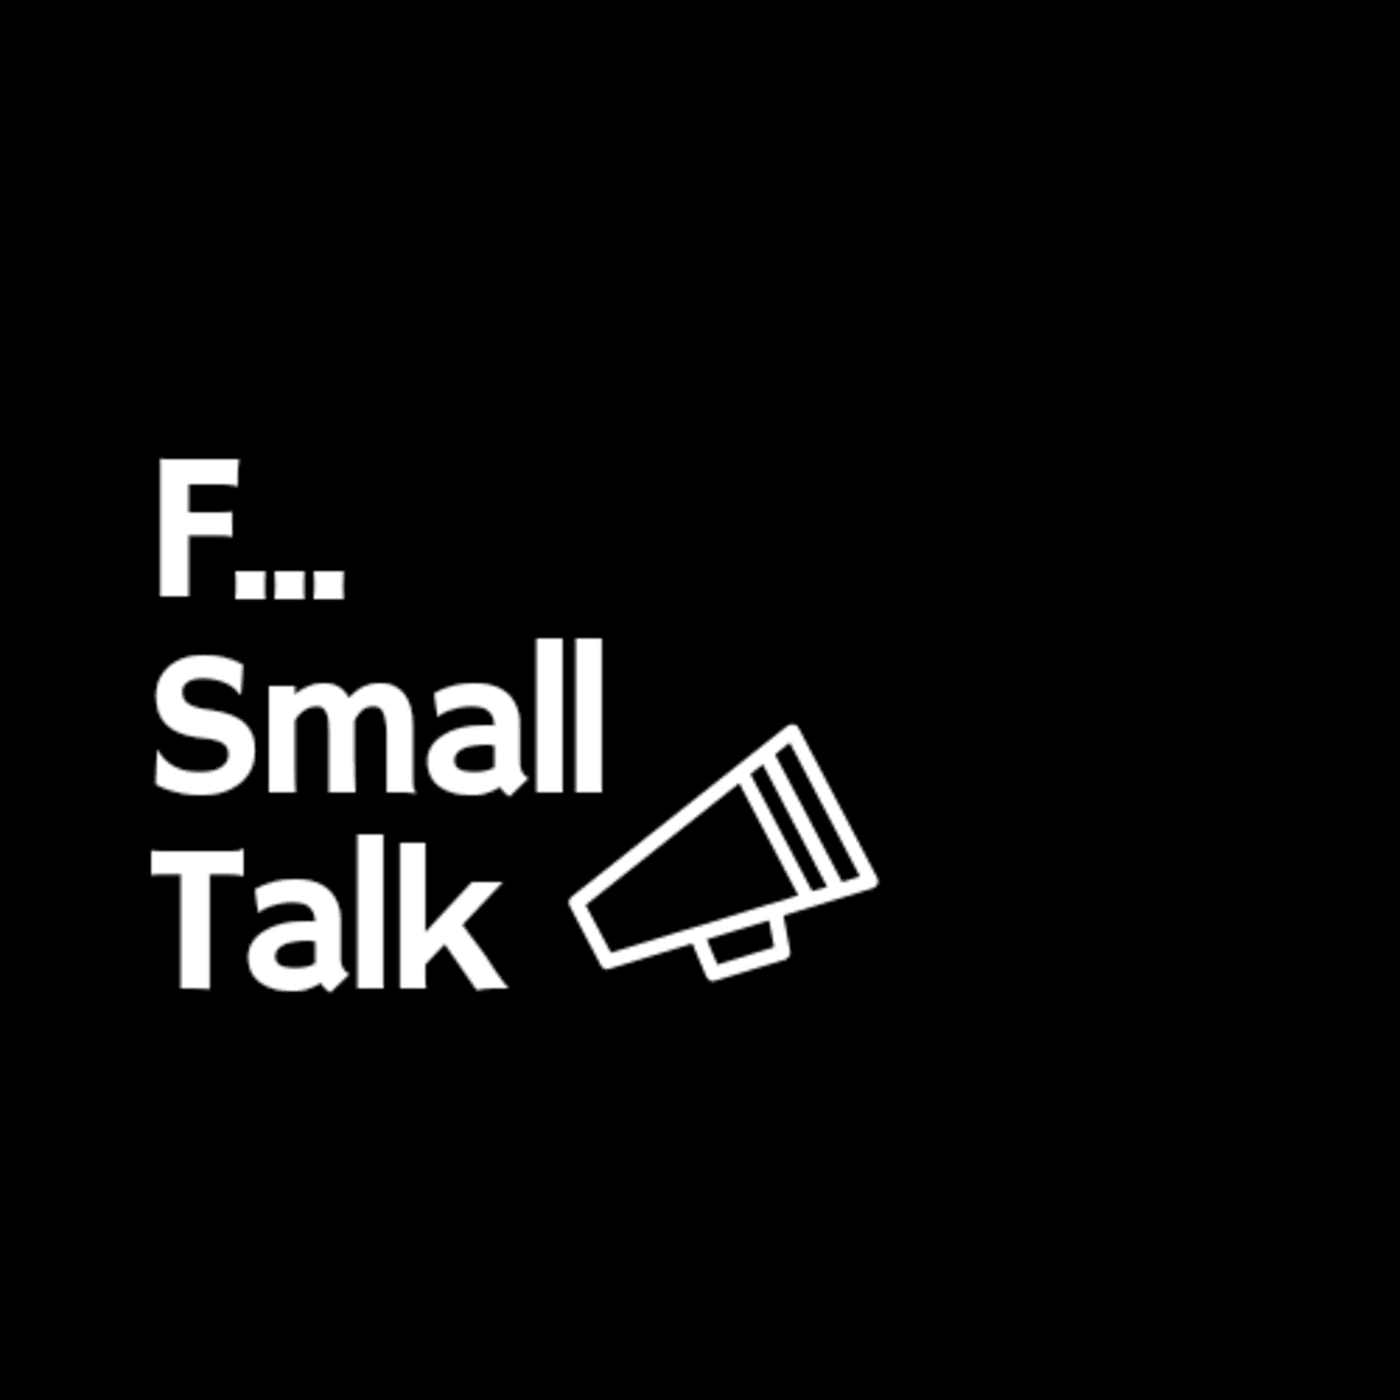 F Small Talk